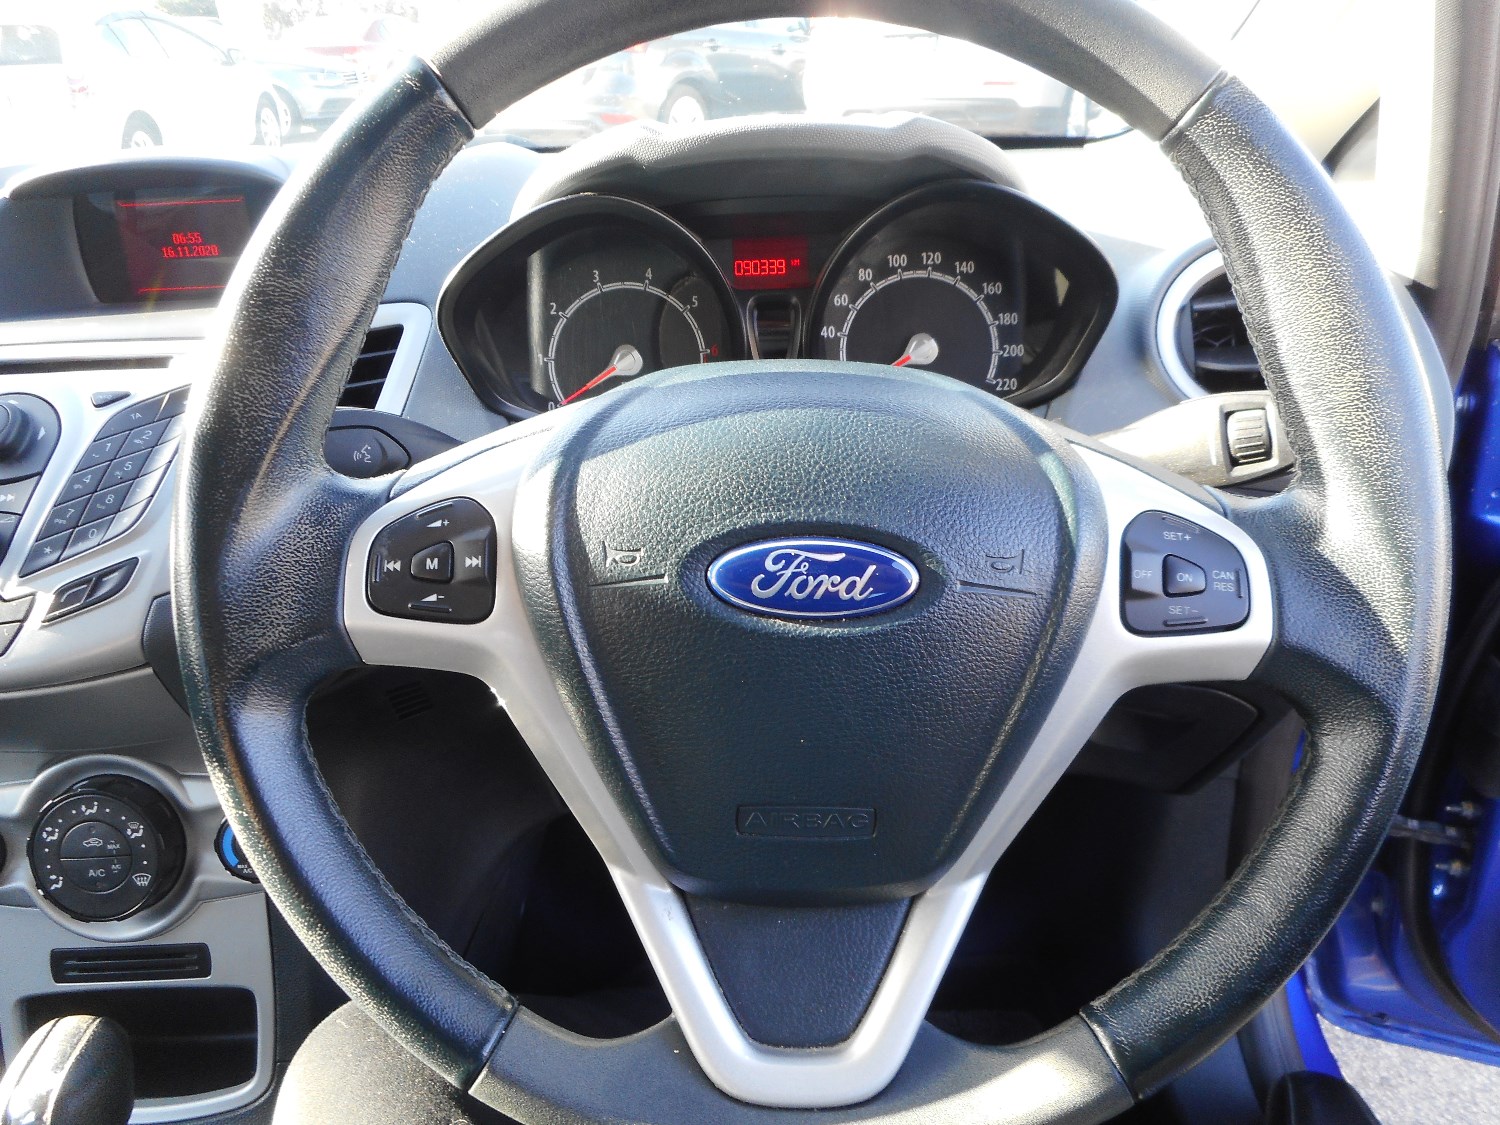 2012 Ford Fiesta WT LX Hatchback Image 15